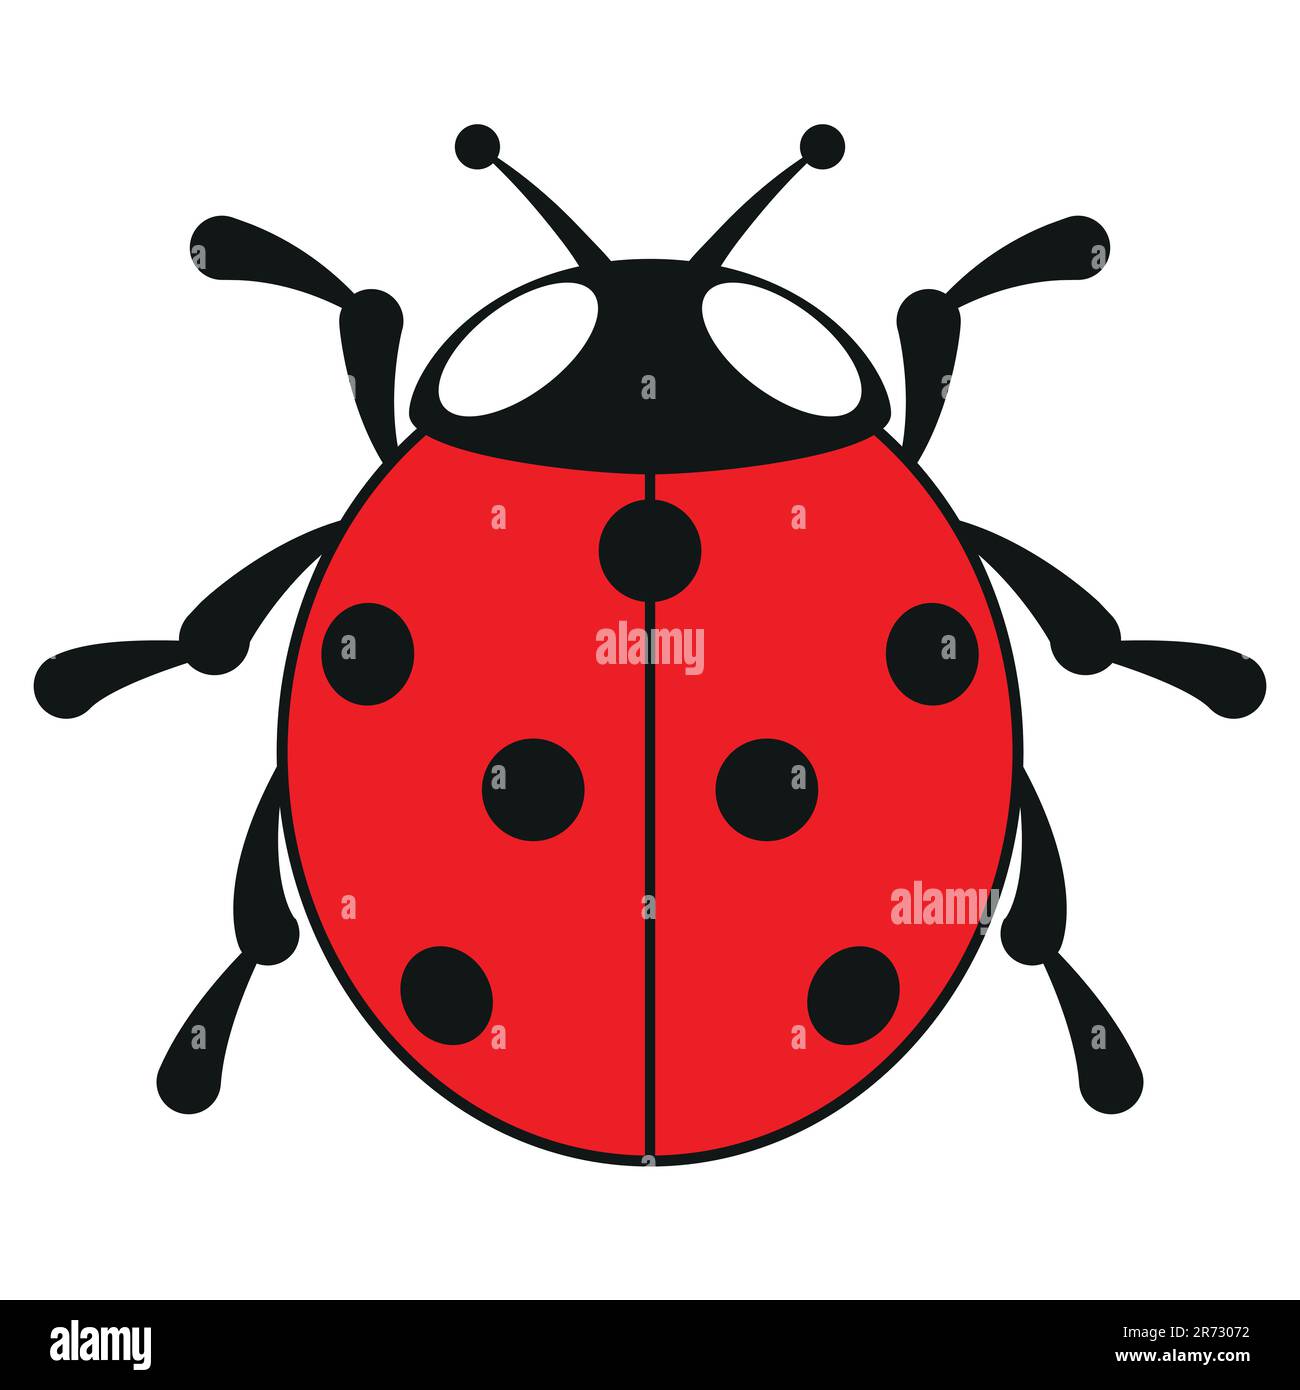 ladybird a sette punti, illustrazione vettoriale a colori di ladybug a sette punti, isolato su sfondo bianco Illustrazione Vettoriale